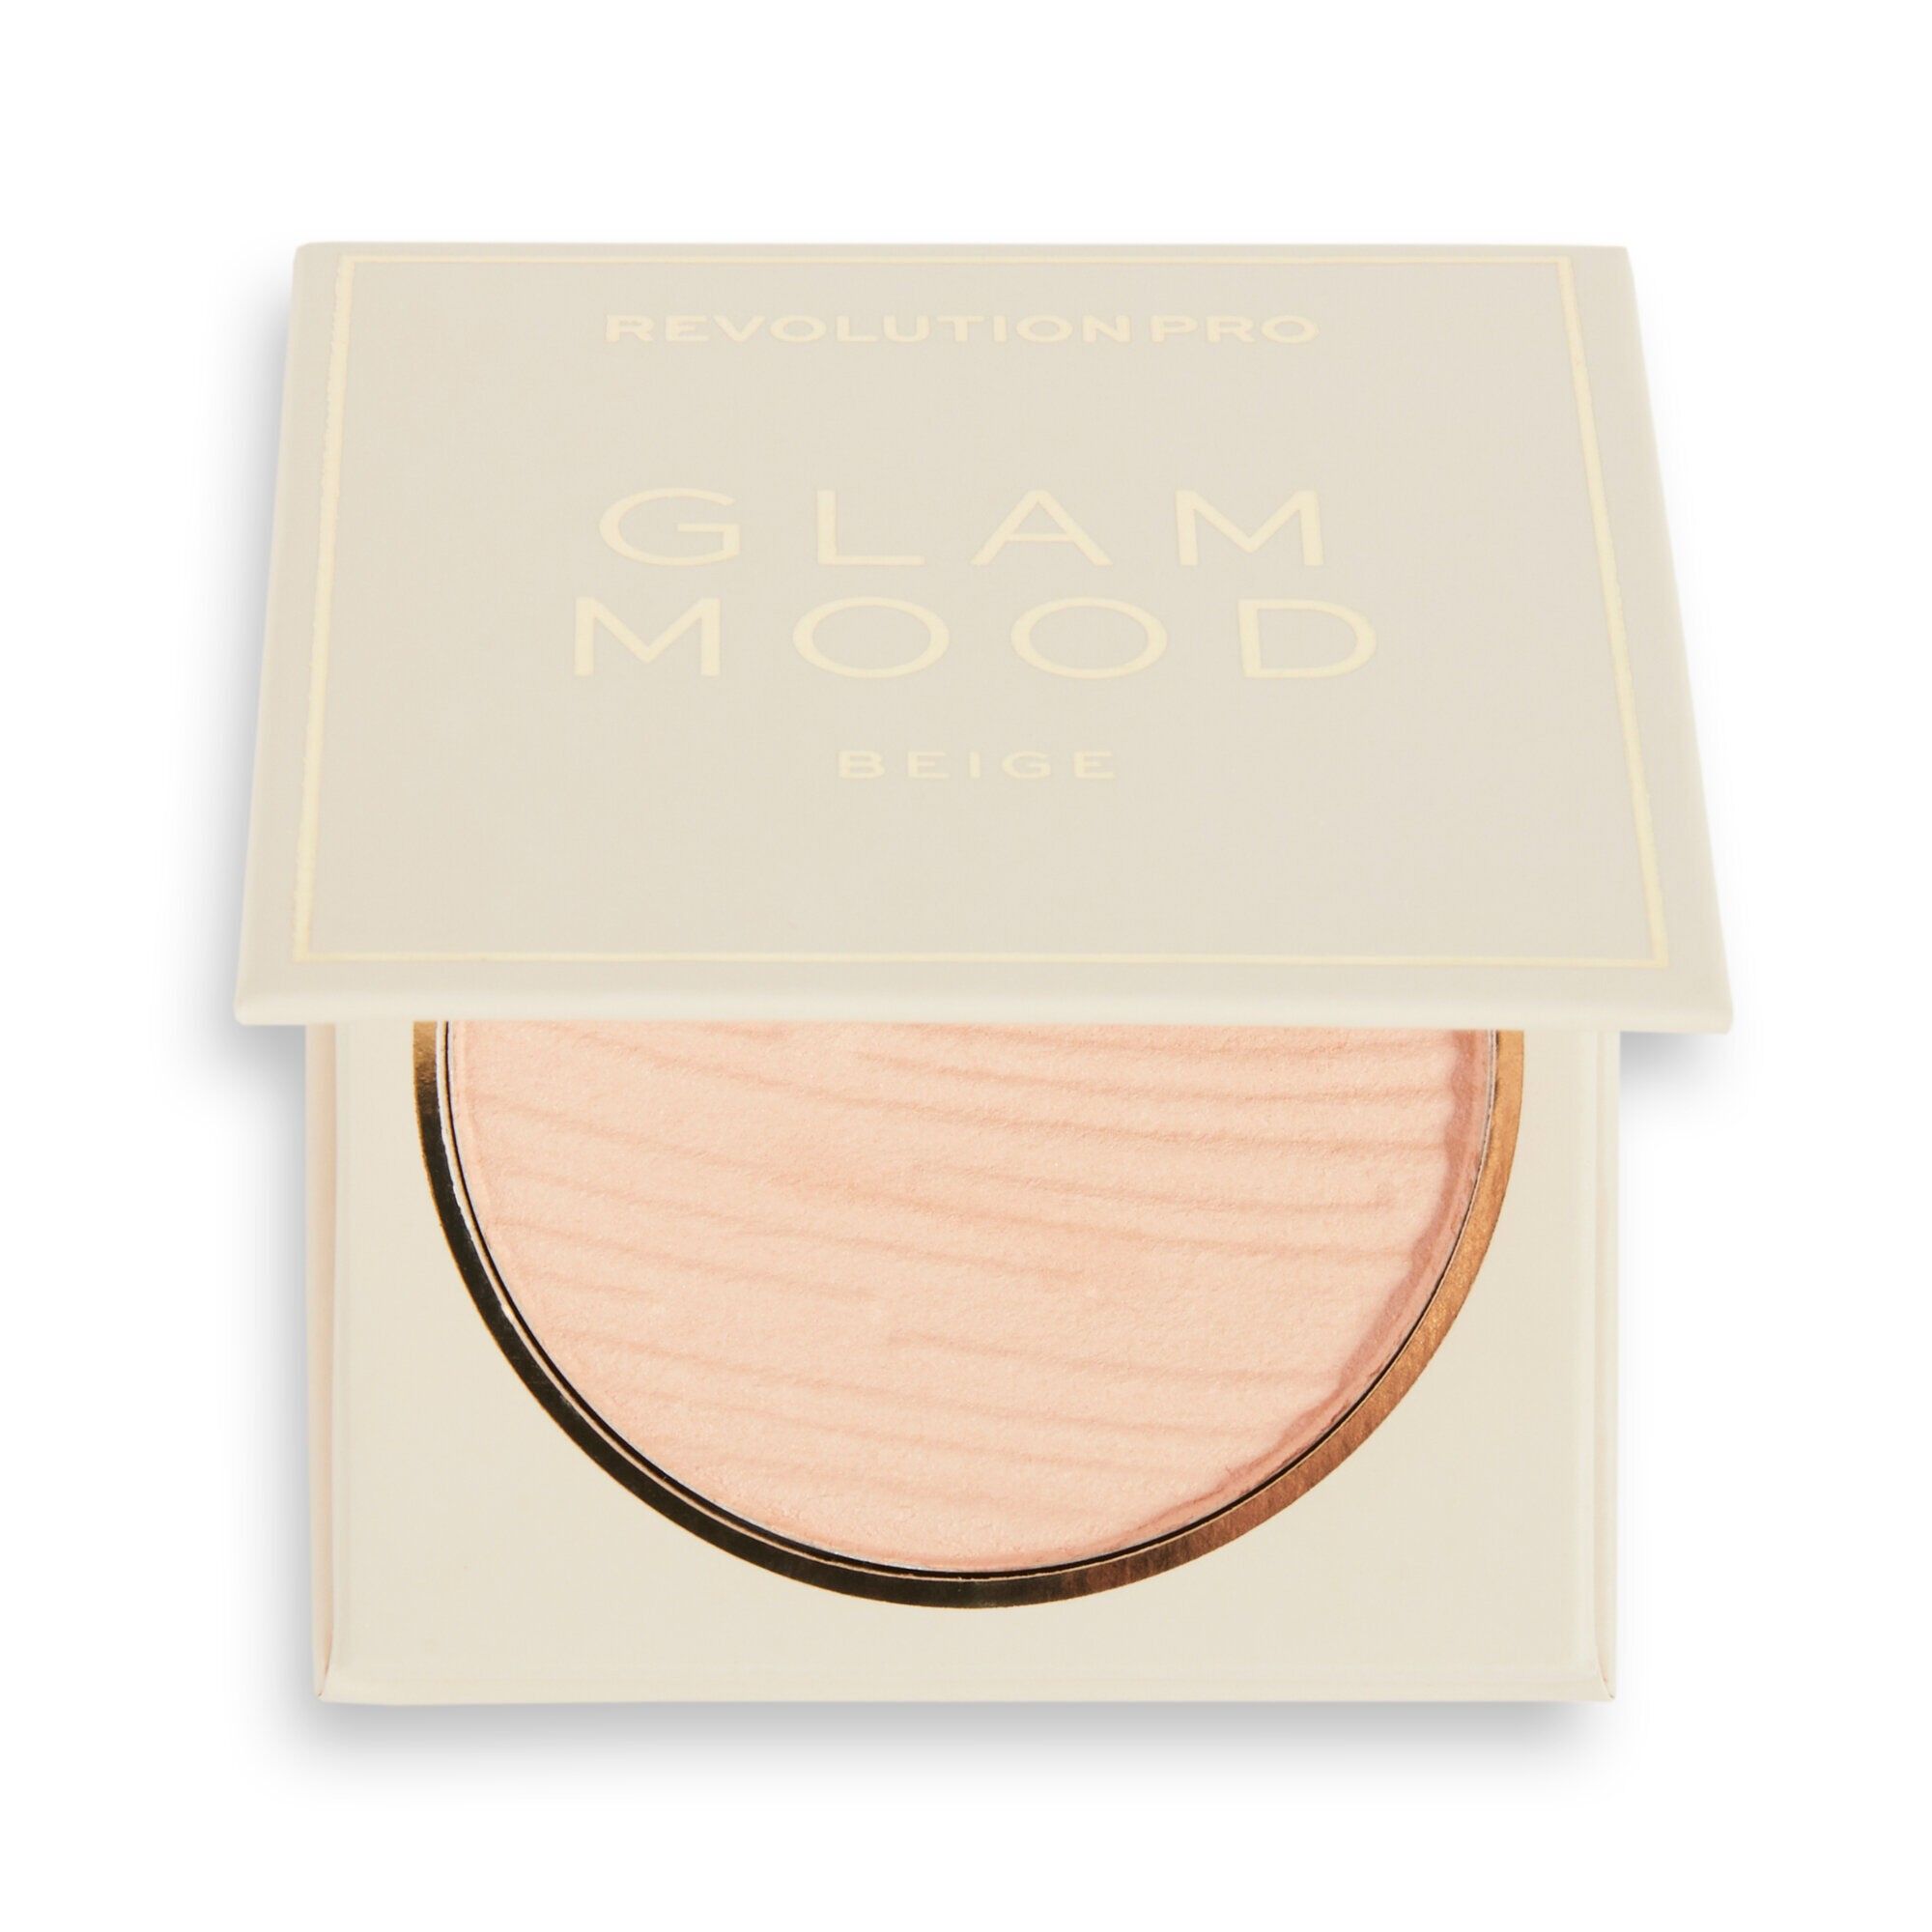 Glam Mood - Pressed Powder